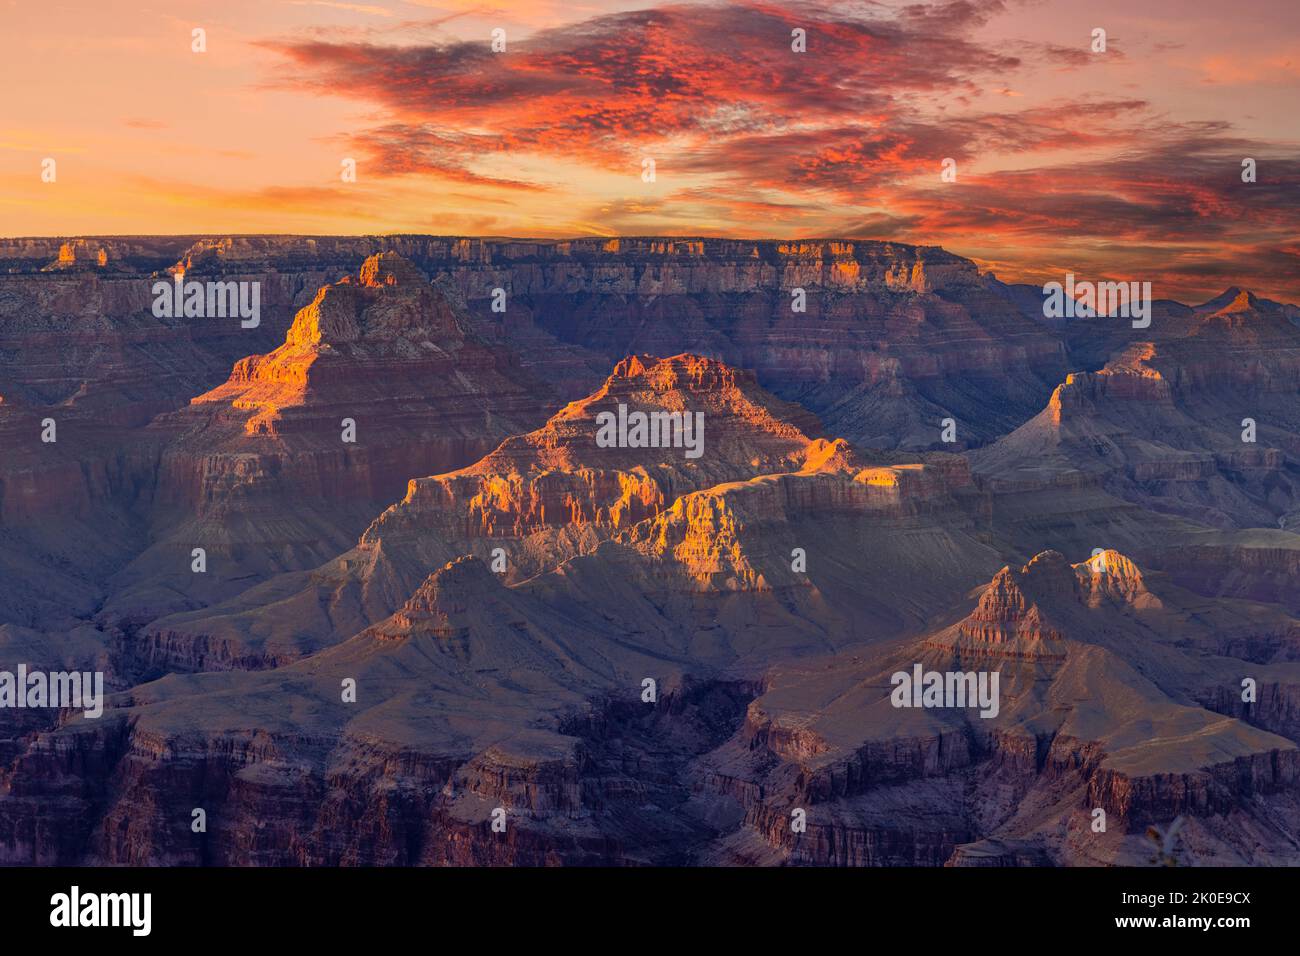 Una vista dell'aspro ma bello e suggestivo parco nazionale del Grand Canyon durante un tramonto ammucidato mostra gli intricati dettagli delle creste e dei formati Foto Stock